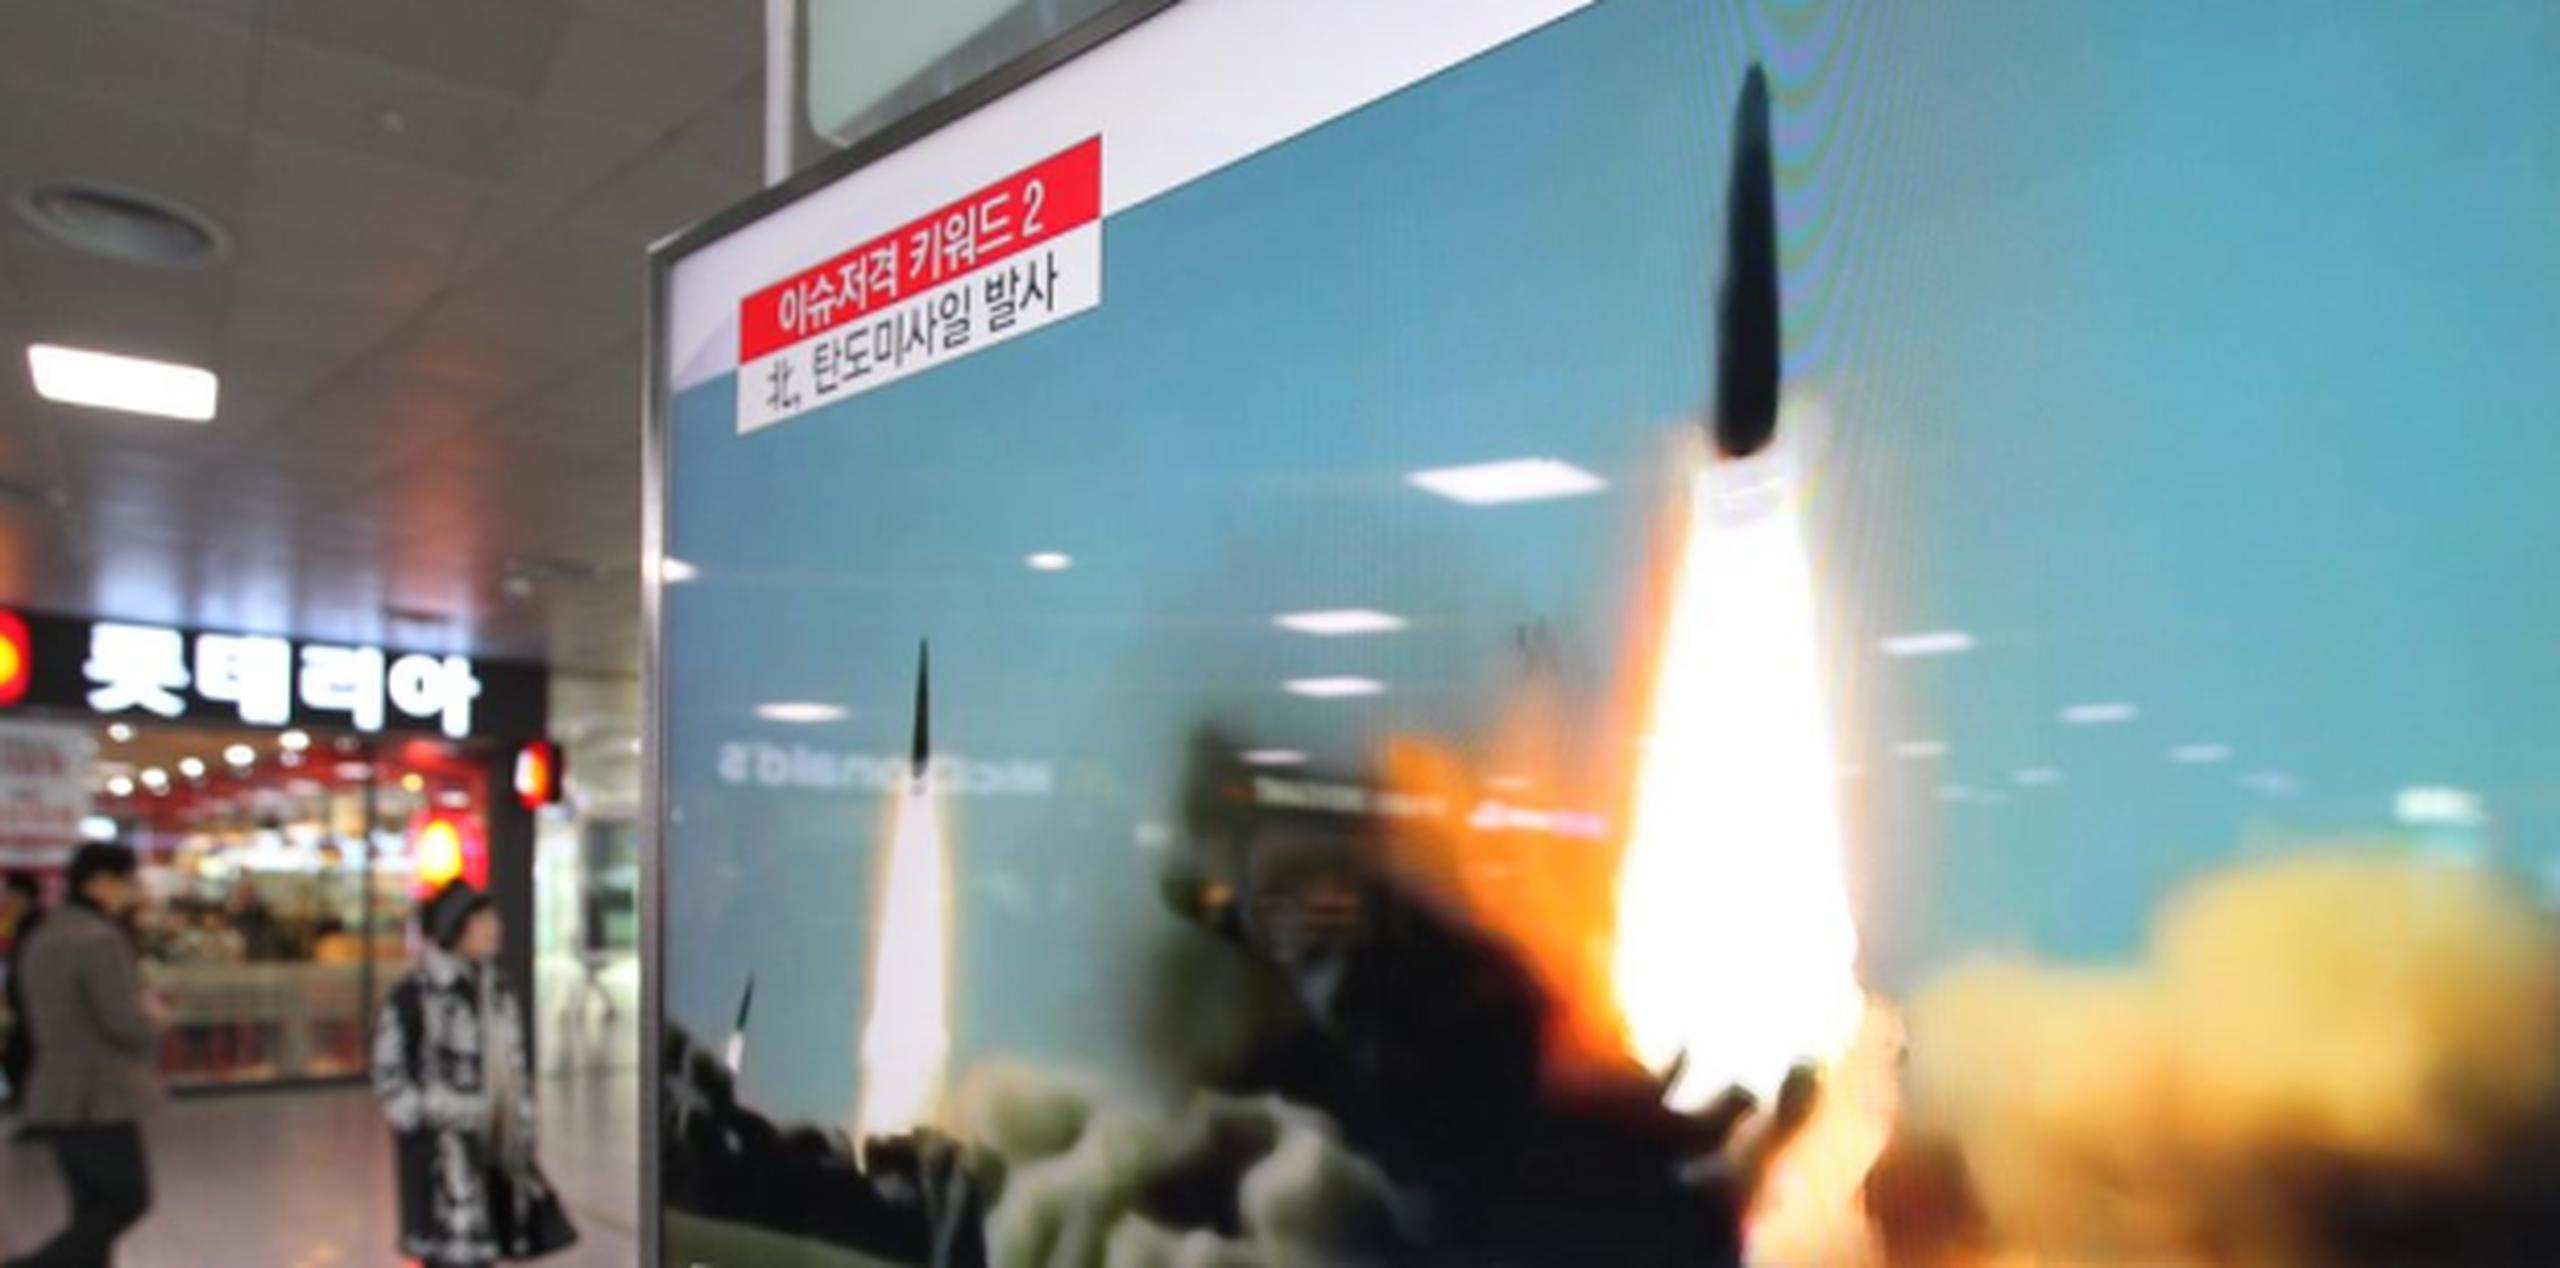 El Gobierno surcoreano baraja denunciar el caso ante el Consejo de Seguridad de la ONU, ya que existen resoluciones que prohíben a Pyongyang realizar pruebas con misiles balísticos. (AP)